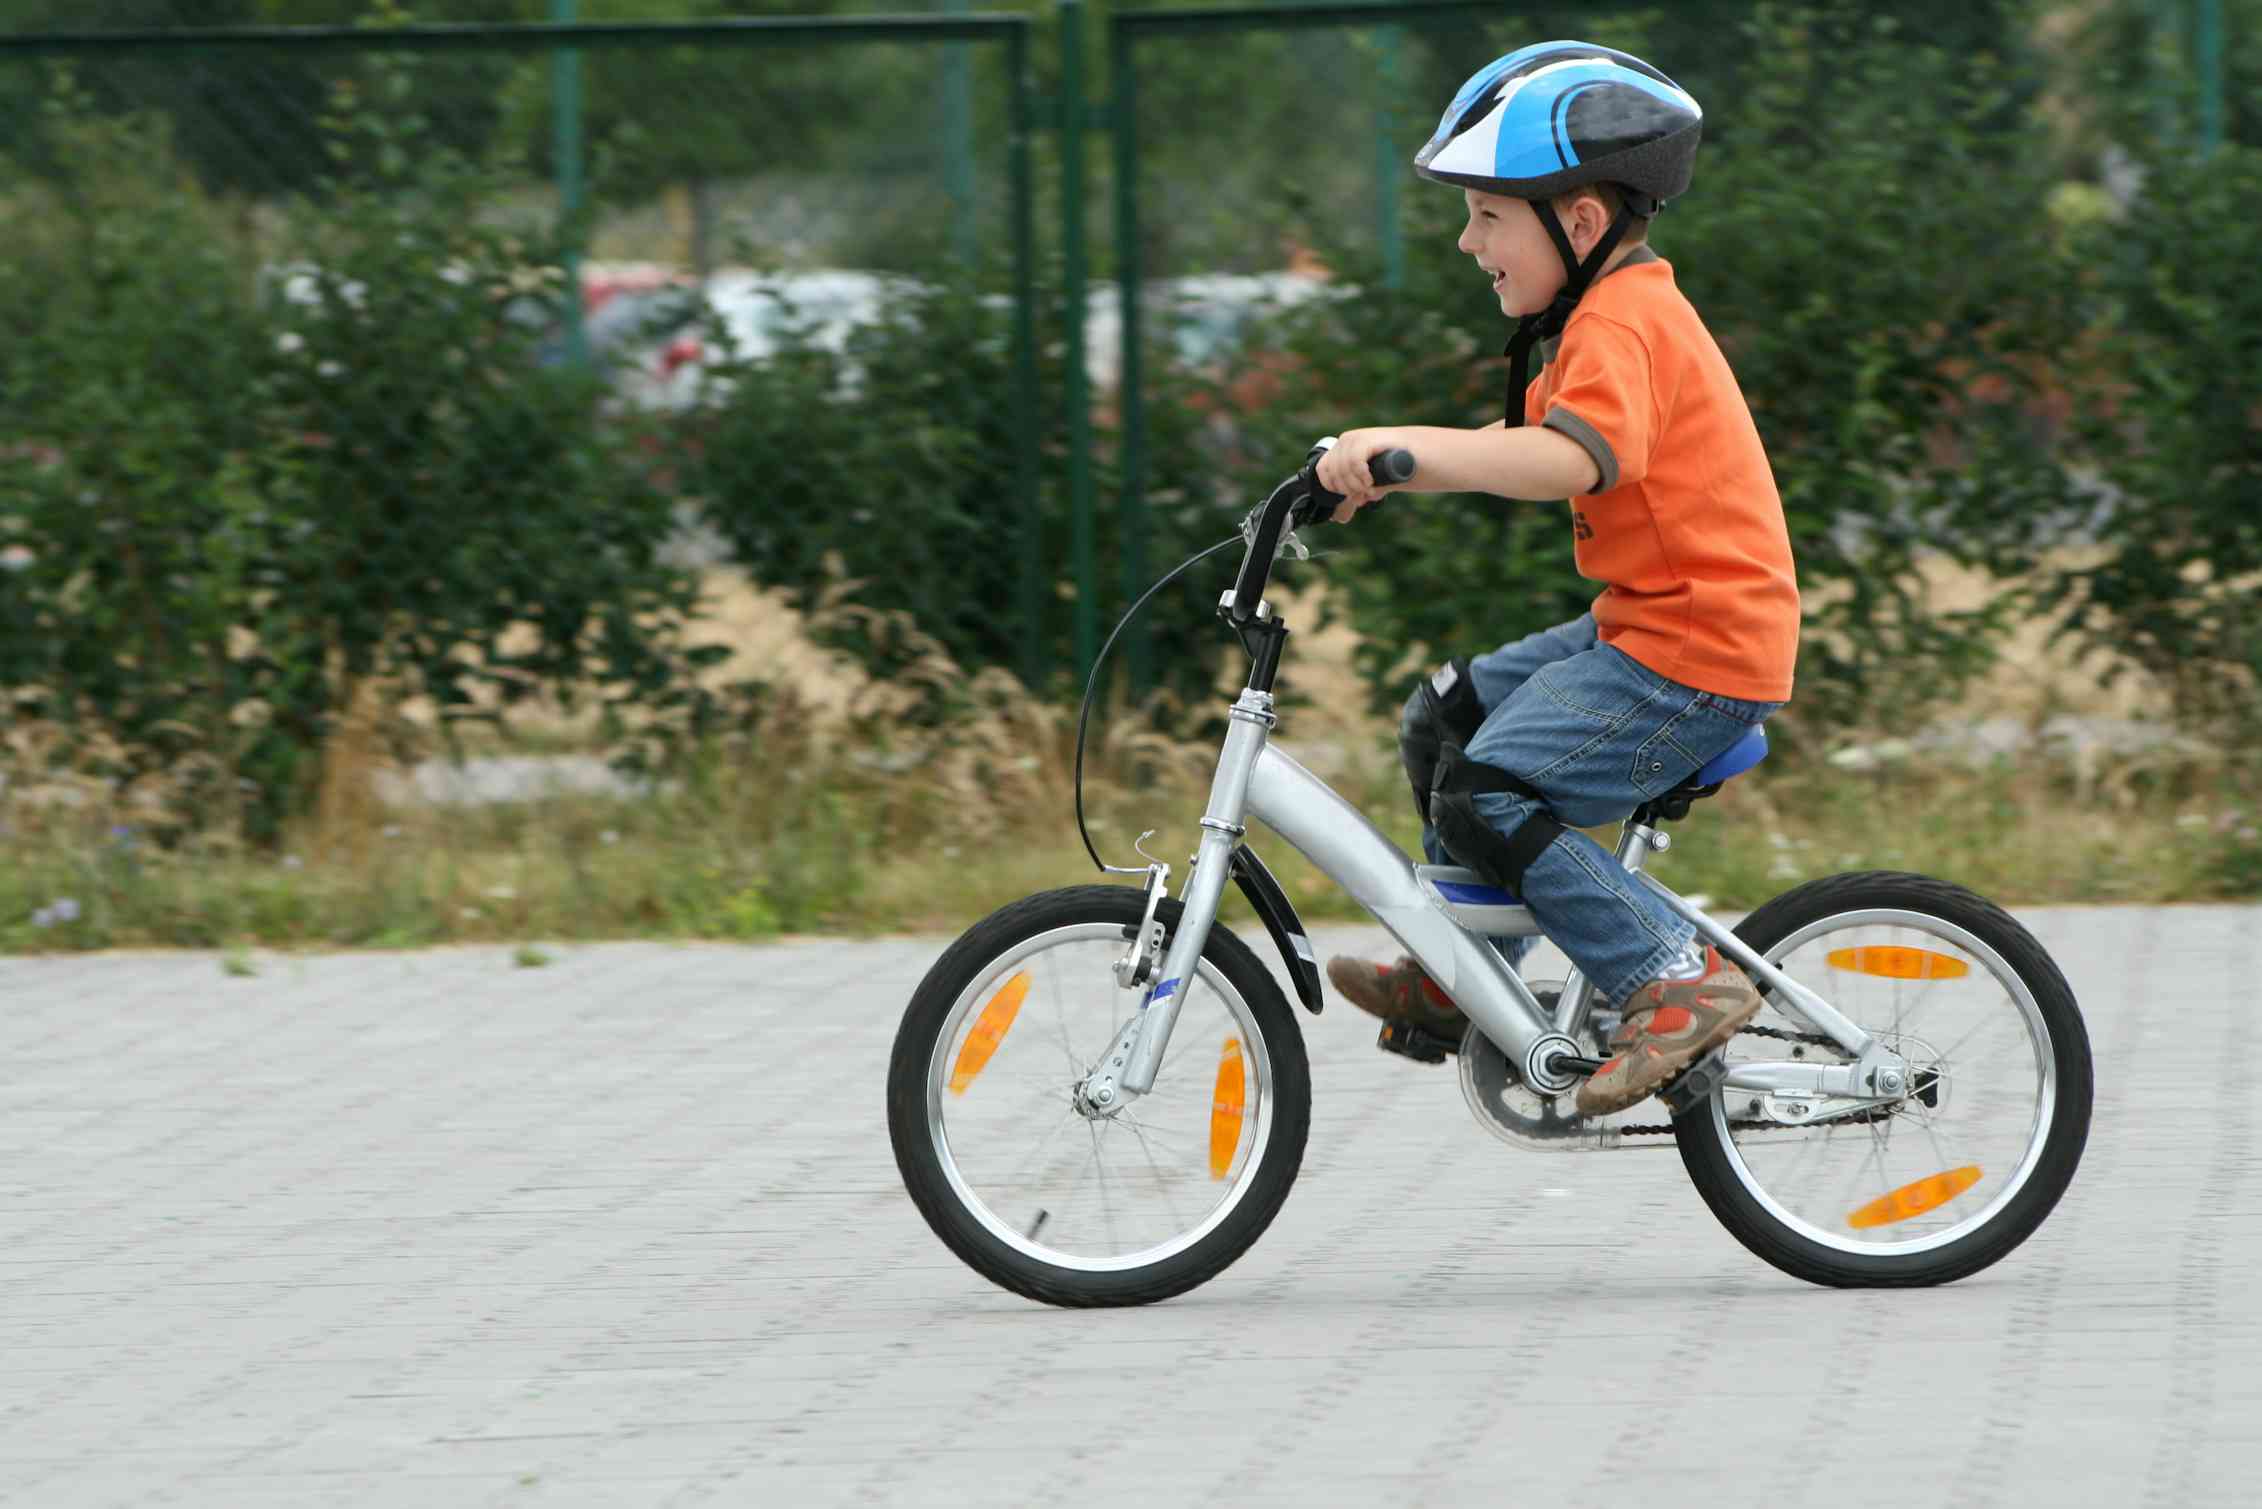 The children are riding bikes. Мальчик на велосипеде. Дети с велосипедом. Мальчик катается на велосипеде. Дети катаются на велосипеде.